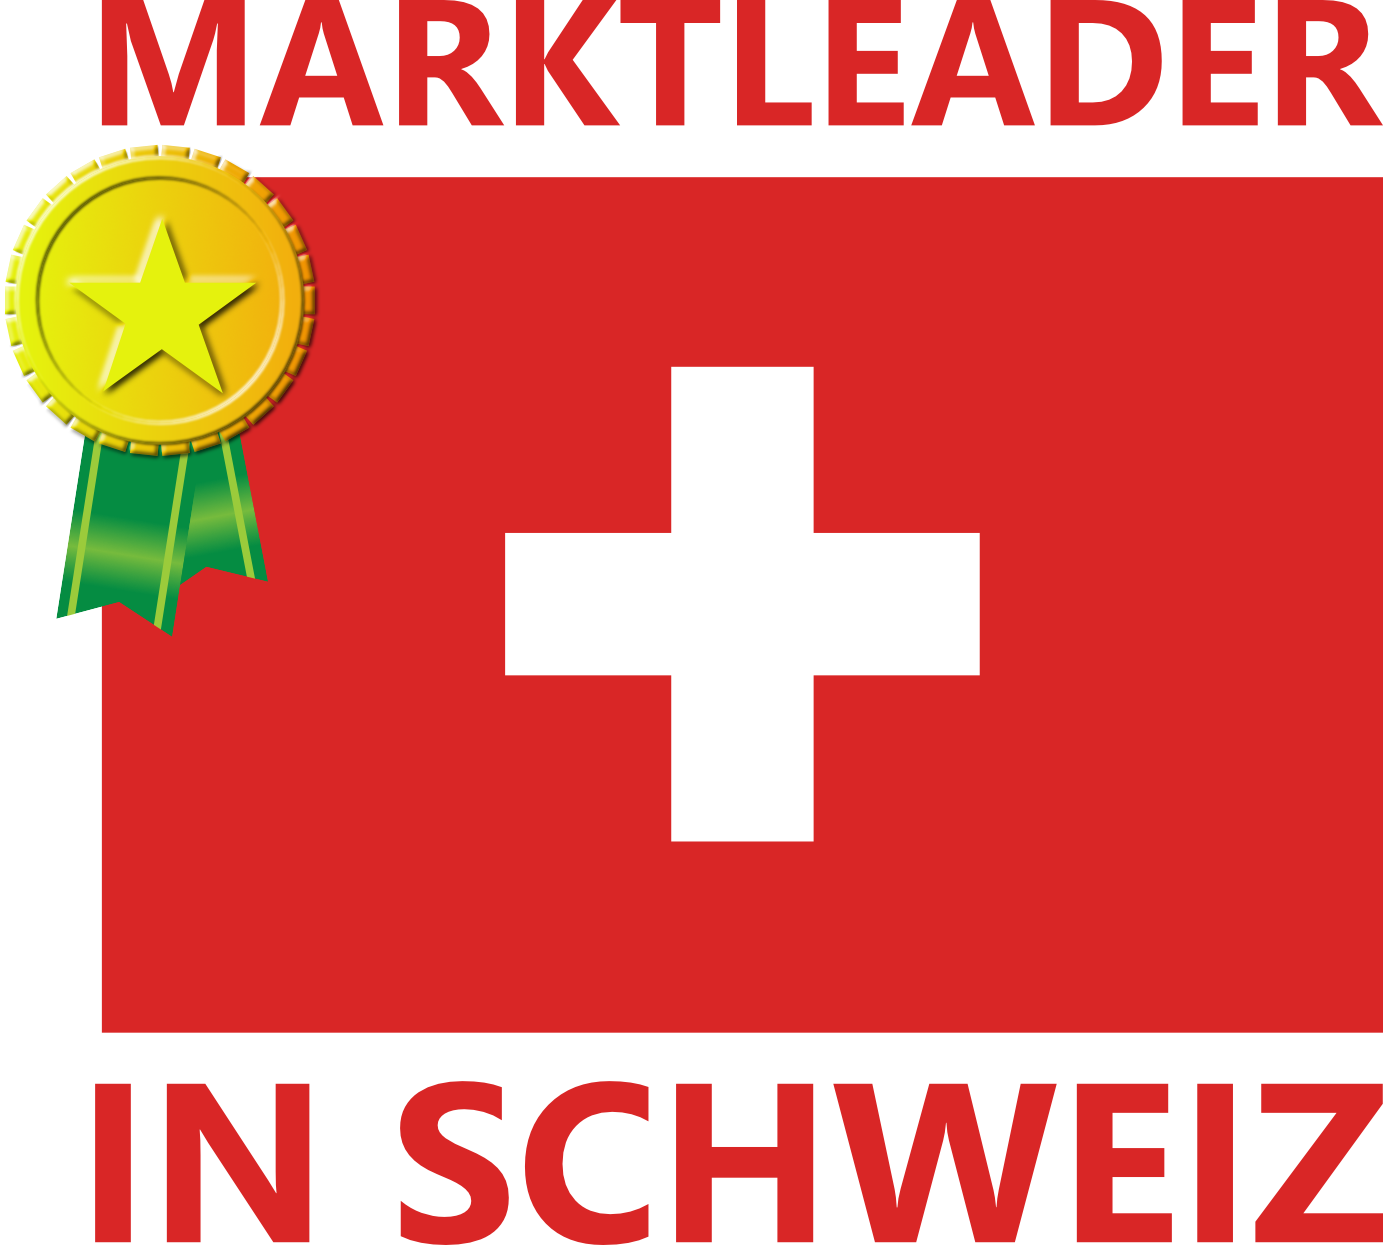 schweiz_marktleader_02-1-1-1.png